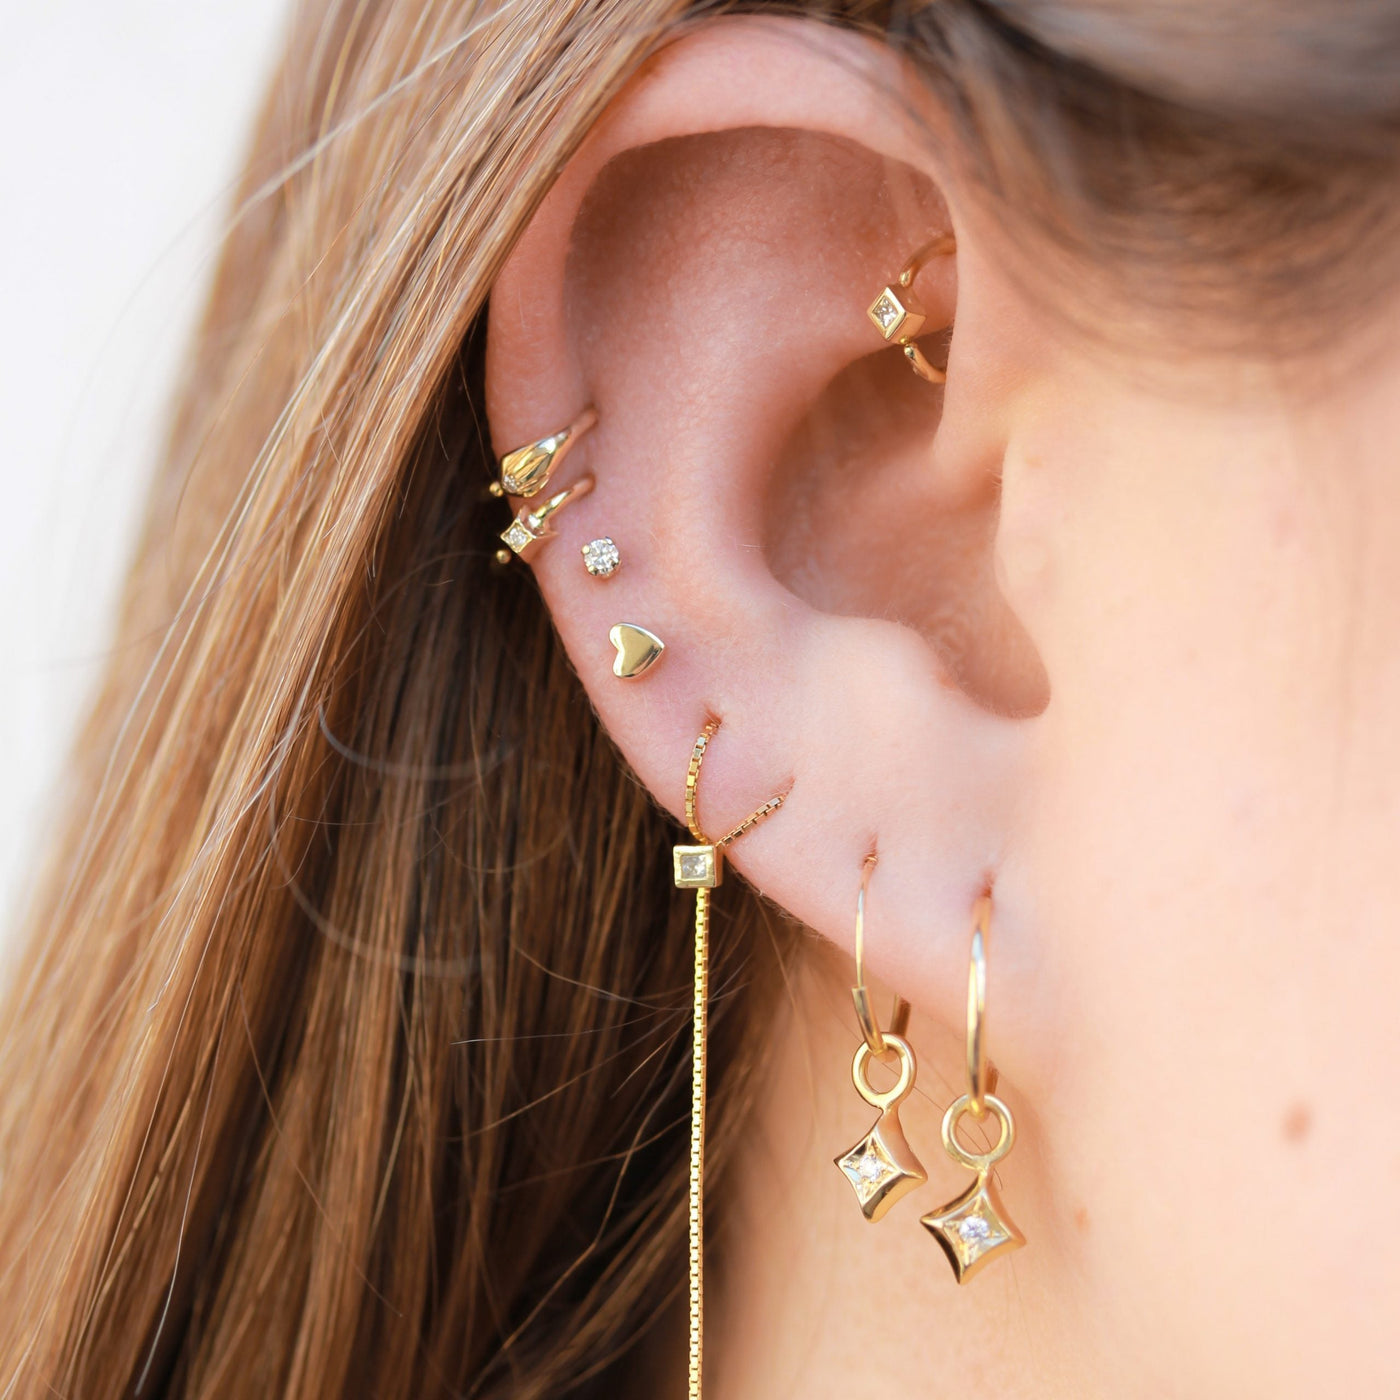 Small Star Piercing Hoop Earring 14K Gold White Diamond Earrings 